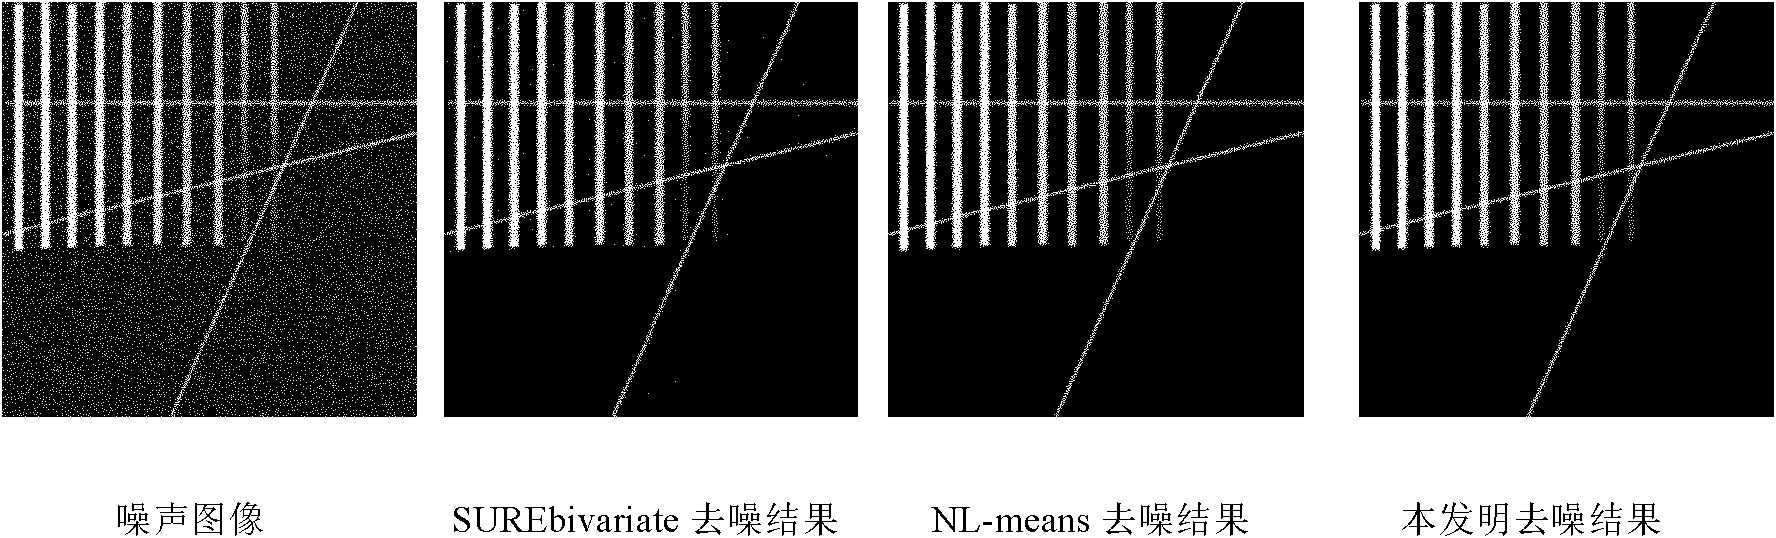 Pseudo-Zernike moment-based image denoising algorithm